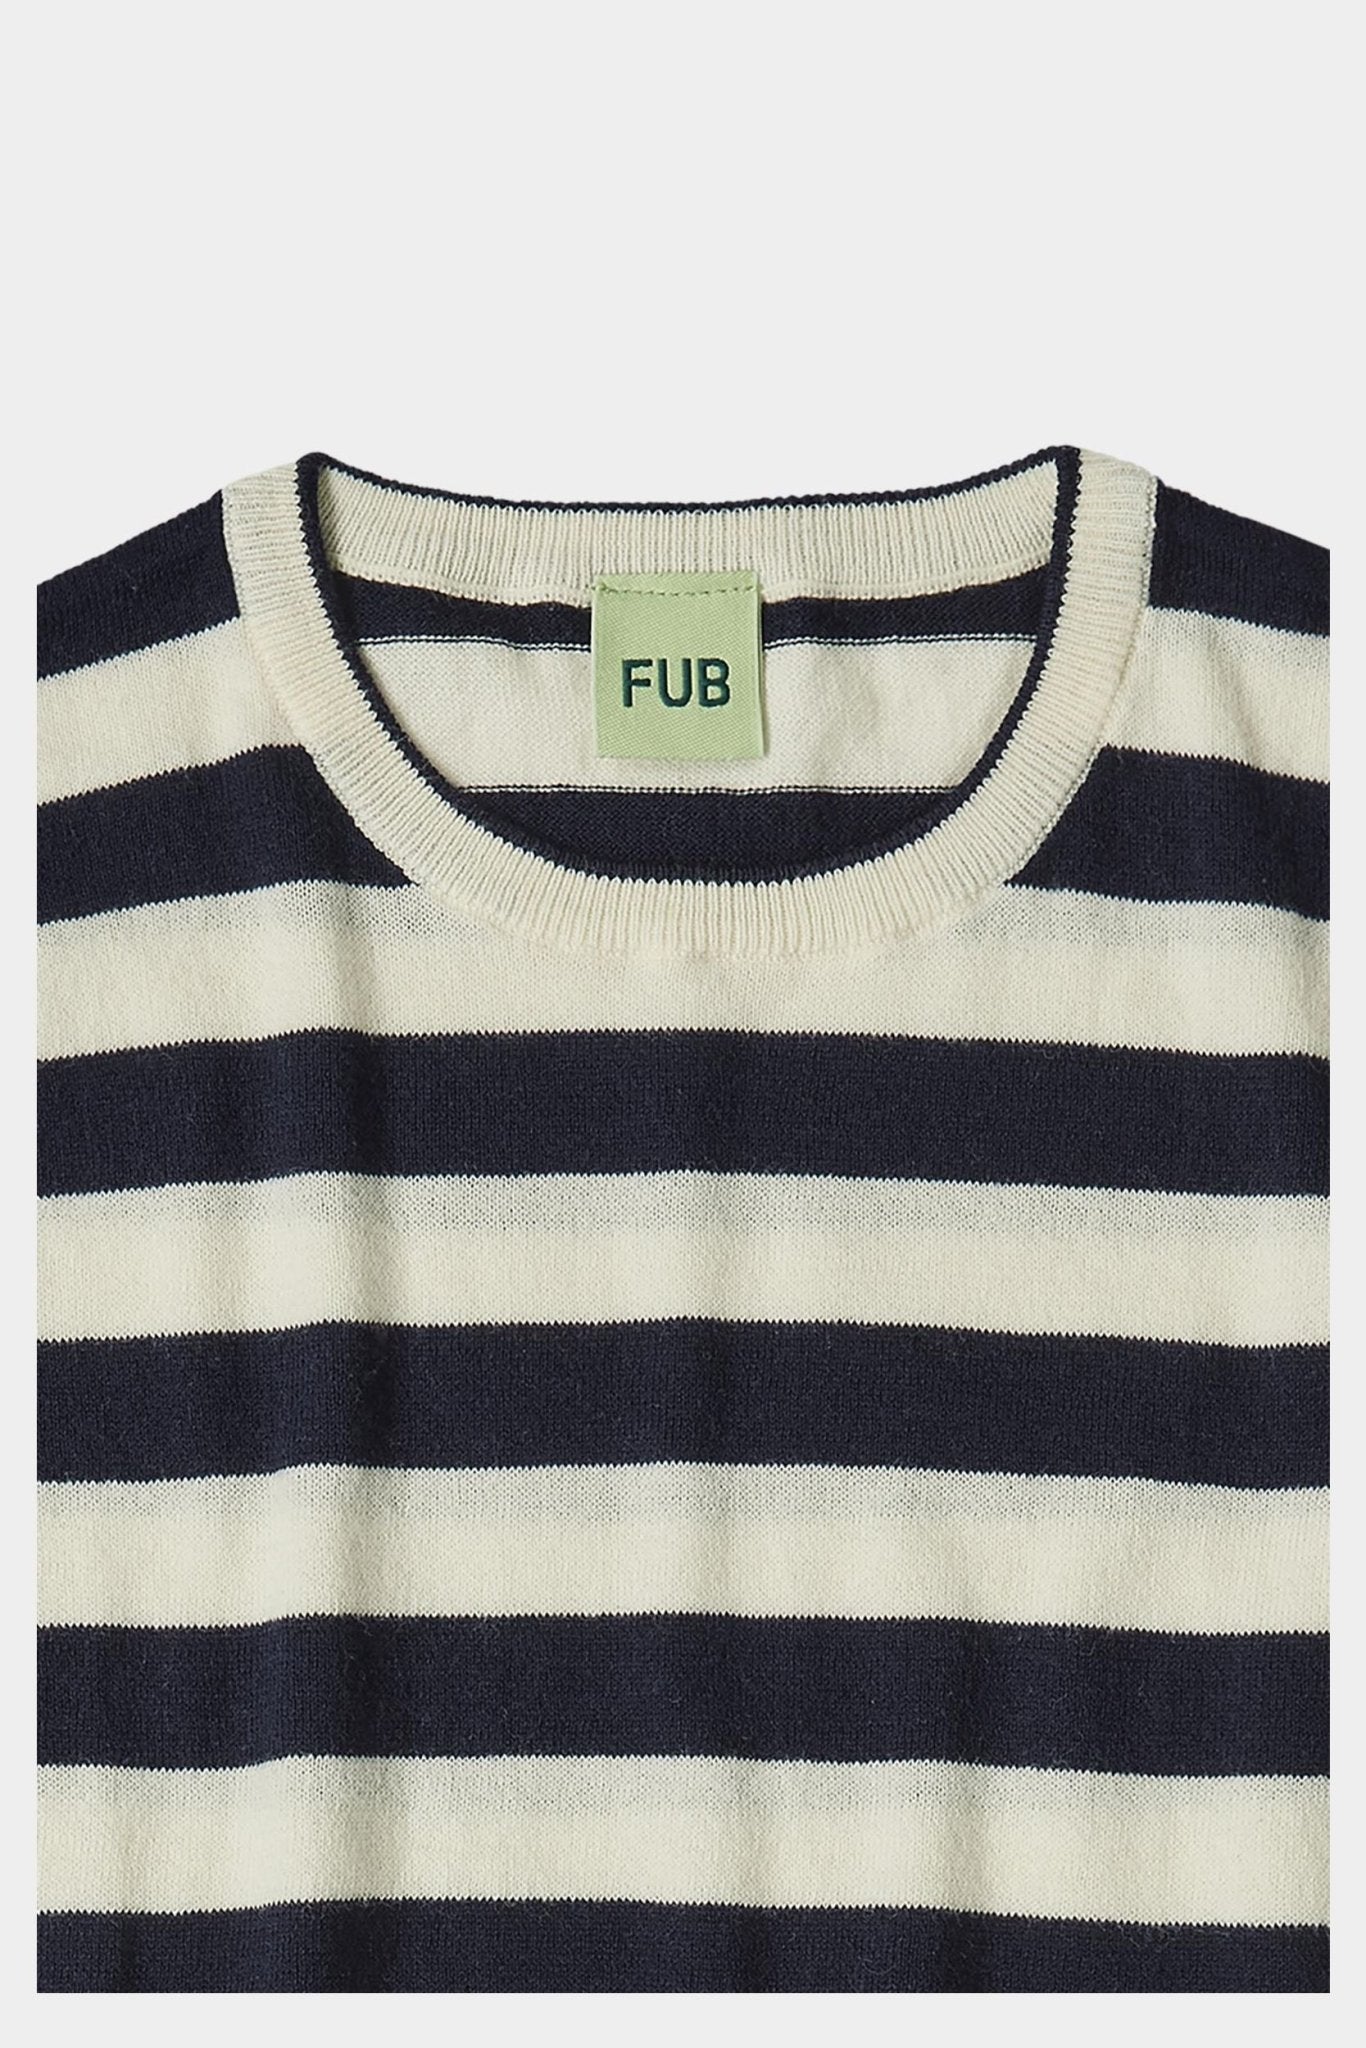 FUB Striped T-shirt ecru/dark navy-0224SS_ecrudarknavy - Lille Univers